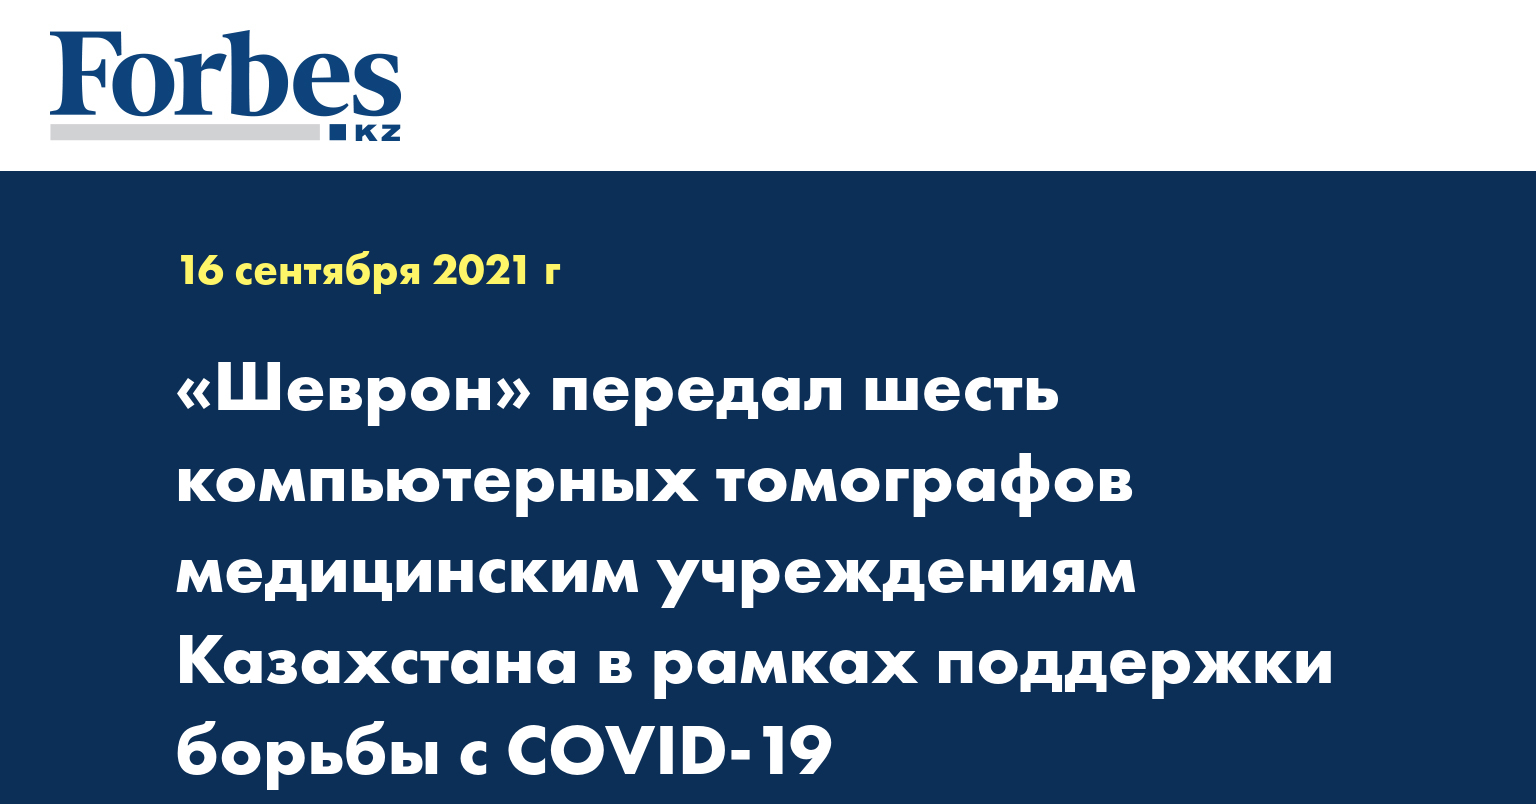 «Шеврон» передал шесть компьютерных томографов медицинским учреждениям Казахстана в рамках поддержки борьбы с COVID-19